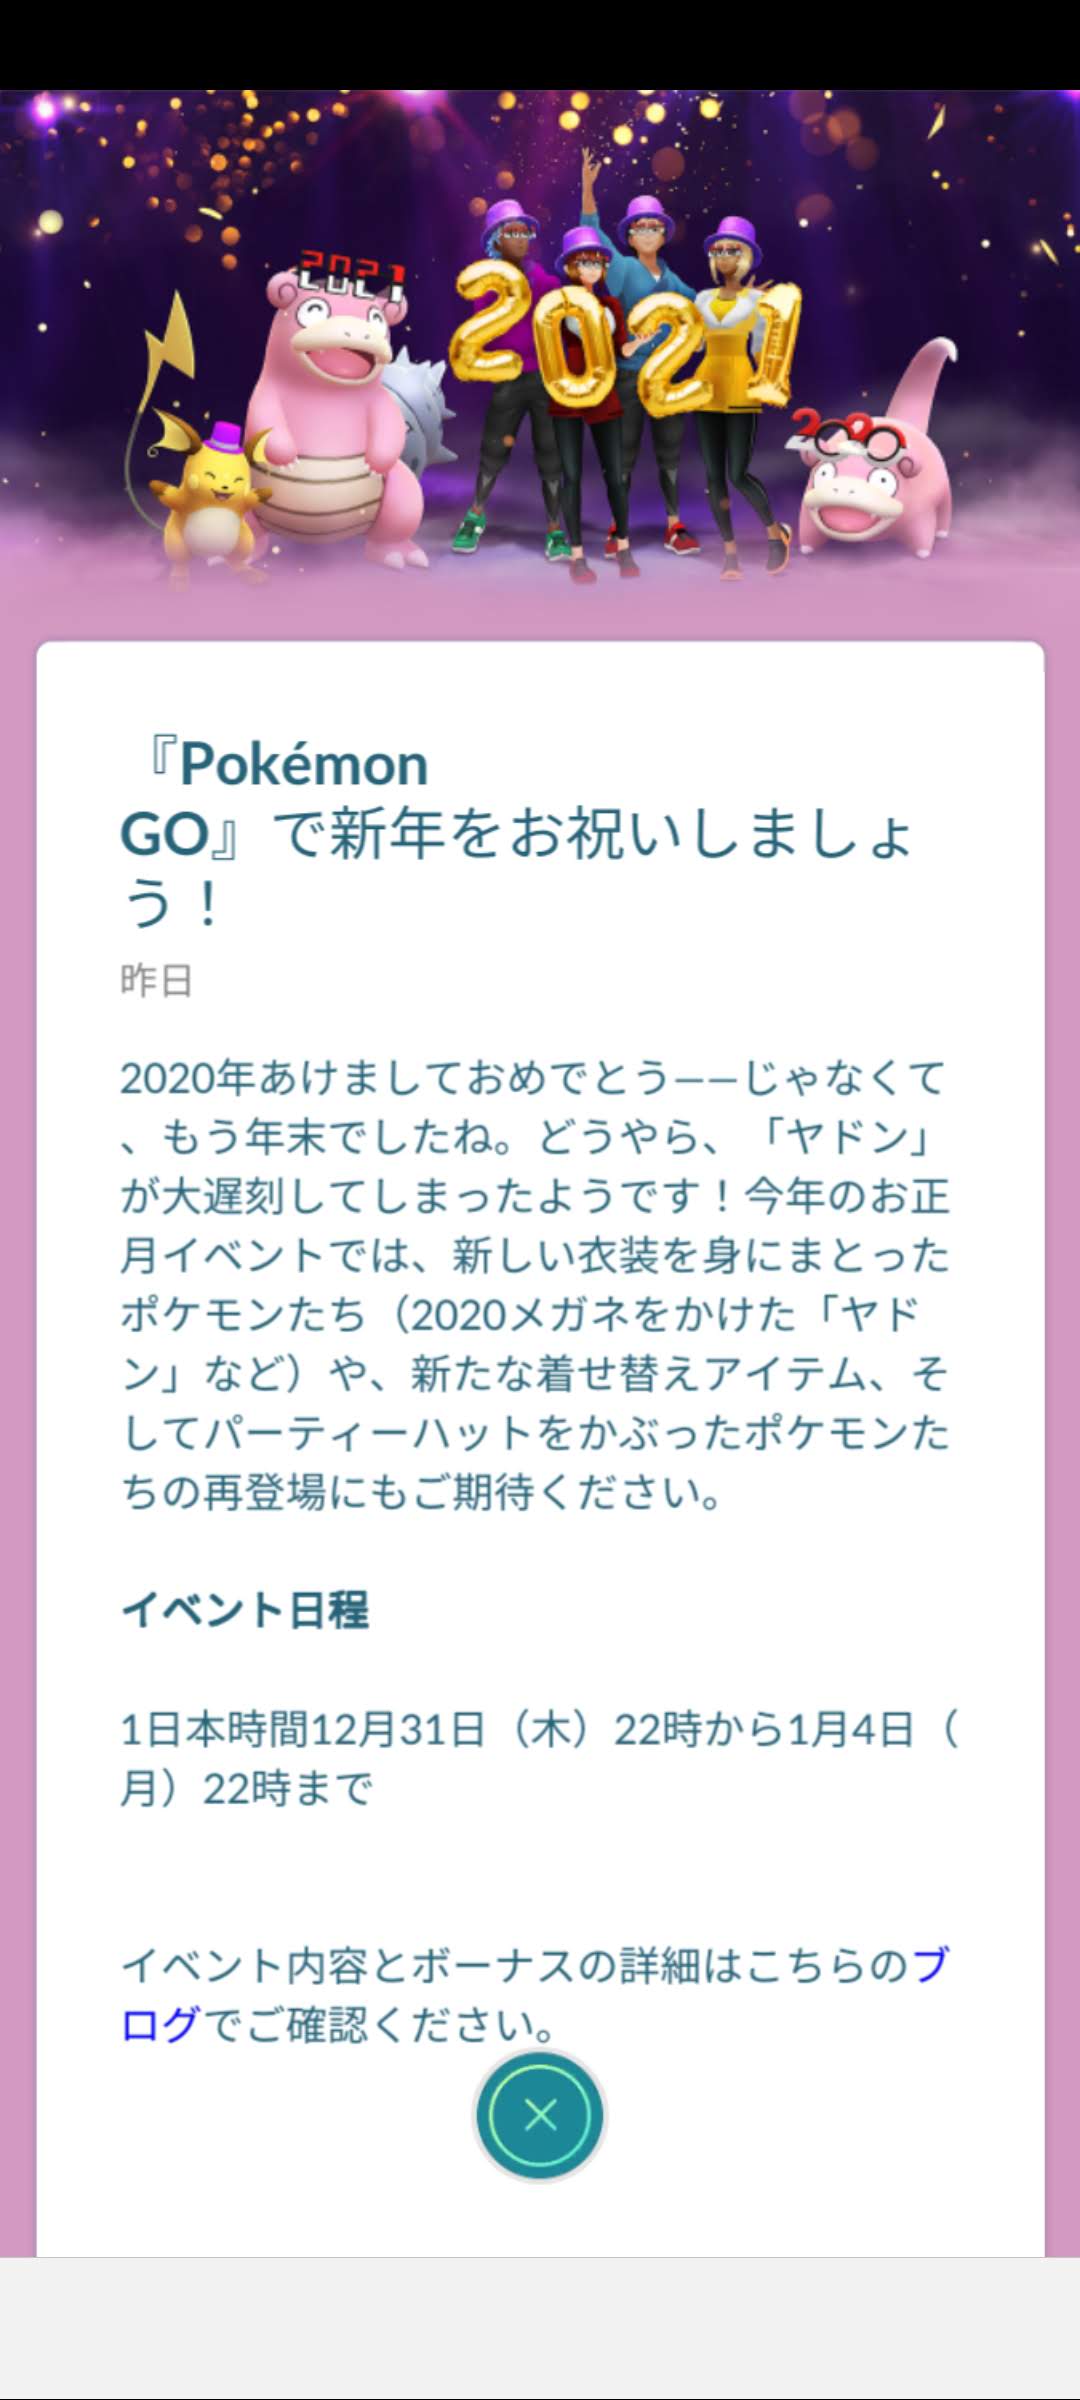 ポケモンgo 限定衣装のヤドンが登場 21新年イベント 最新情報 なま1428のポケモンgo Hobbyworld